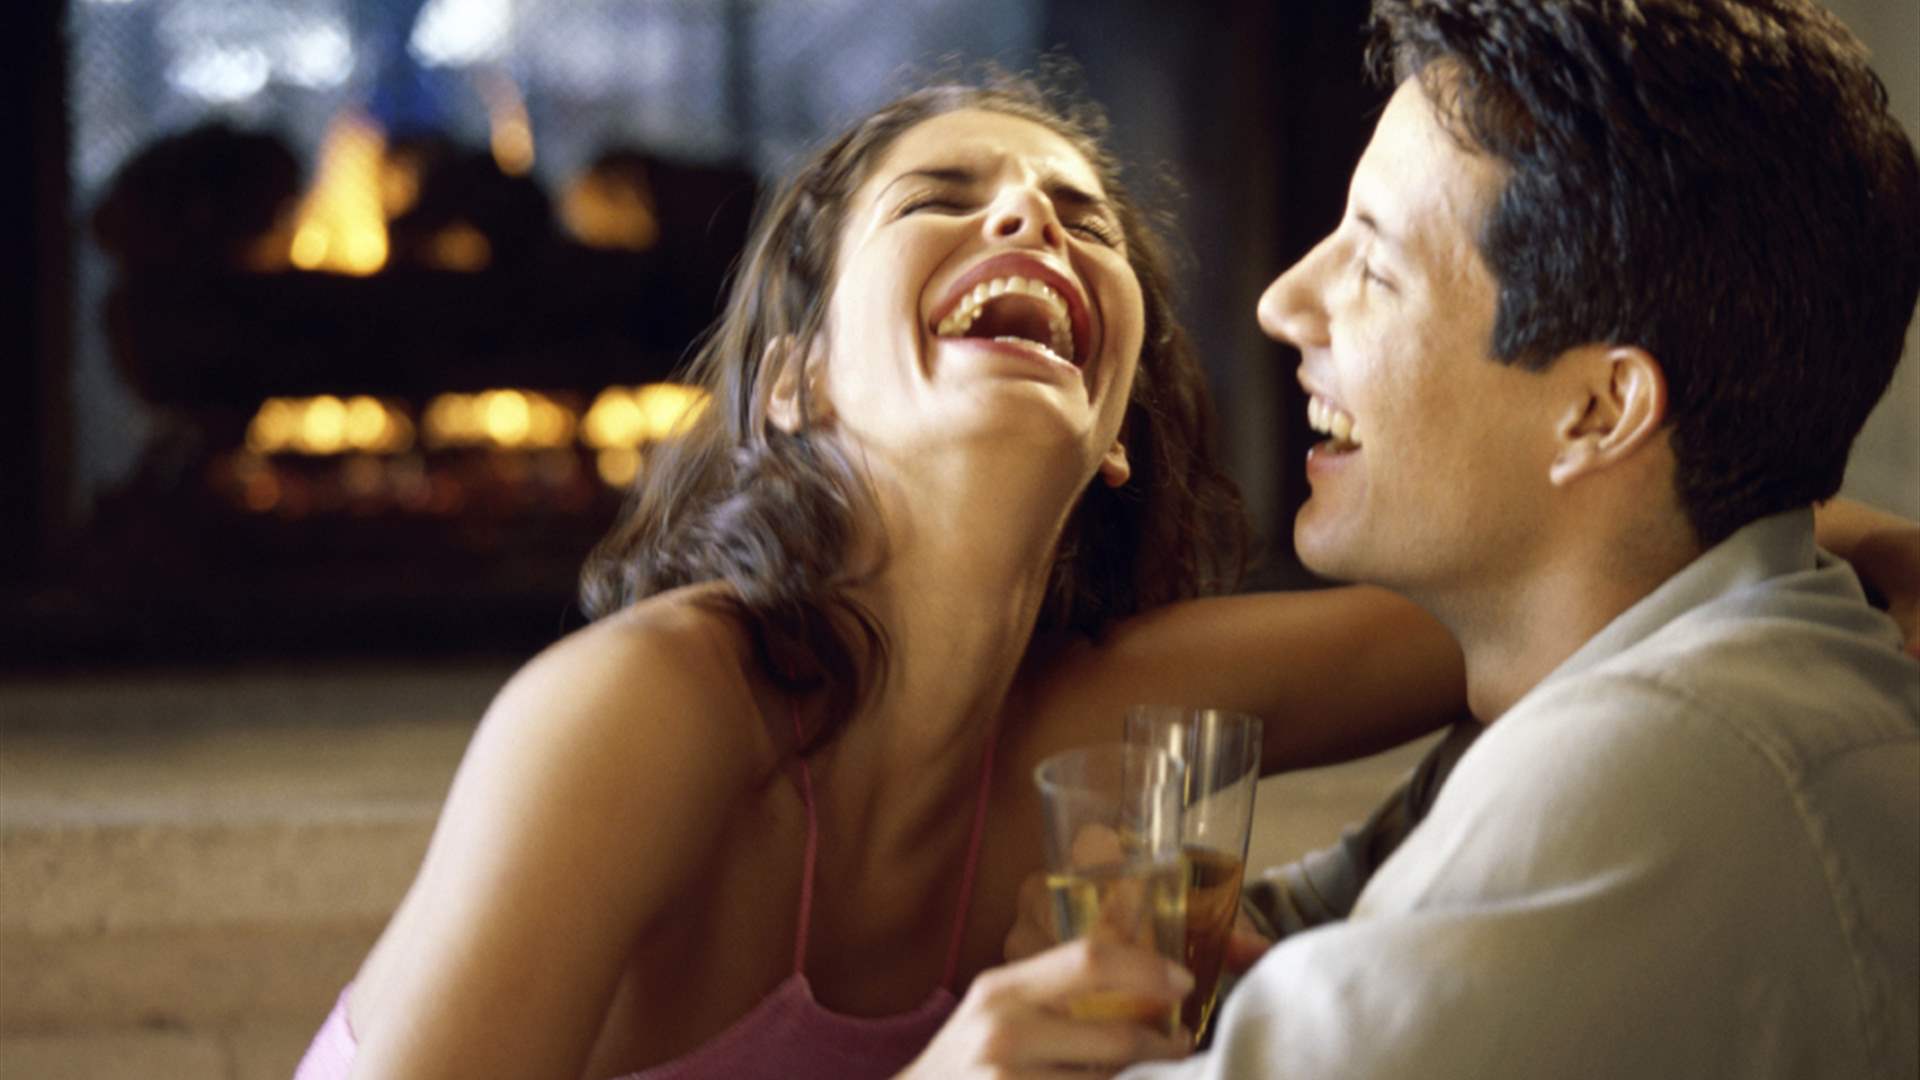 الفكاهة تحظى بدور مهم في الحب... فهل يعزز الضحك العلاقات الرومانسية حقا؟